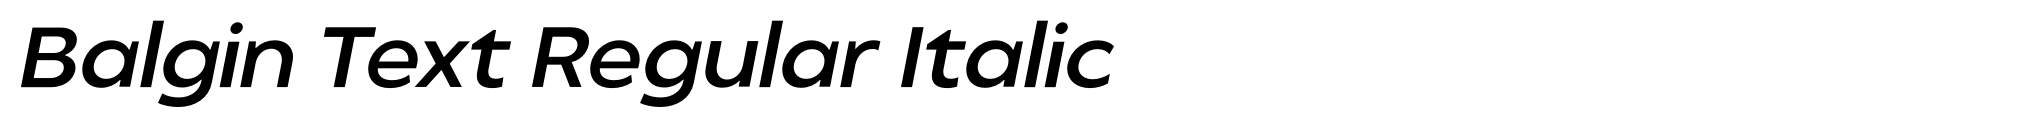 Balgin Text Regular Italic image